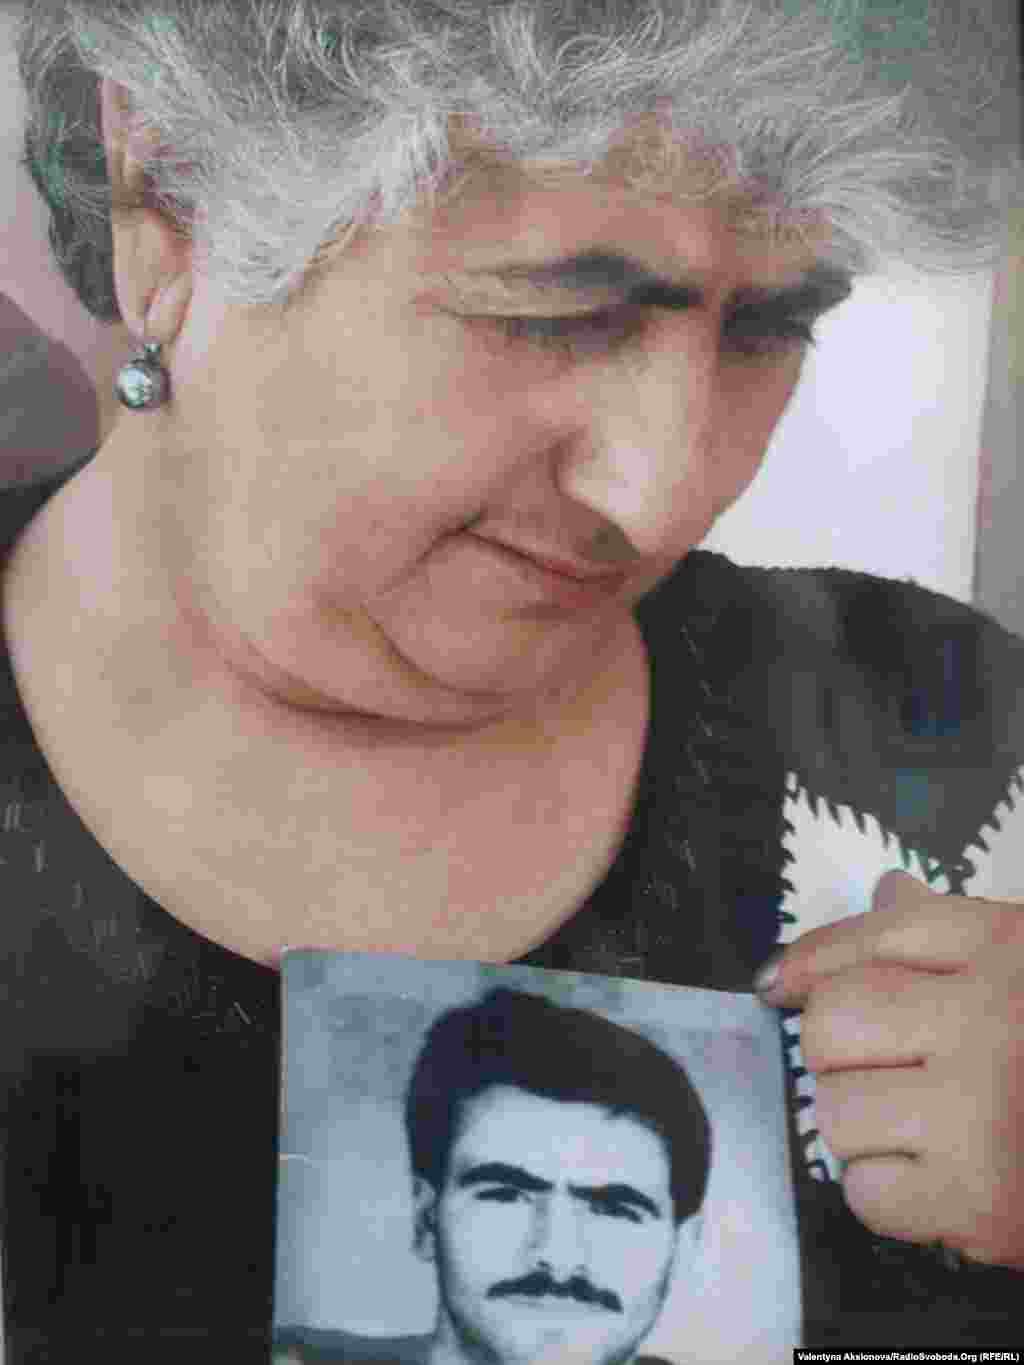 Віра Григорян, голова Союзу зниклих без вісти воїнів Нагірного Карабаху, з фотографією свого сина, що зник без вісти.